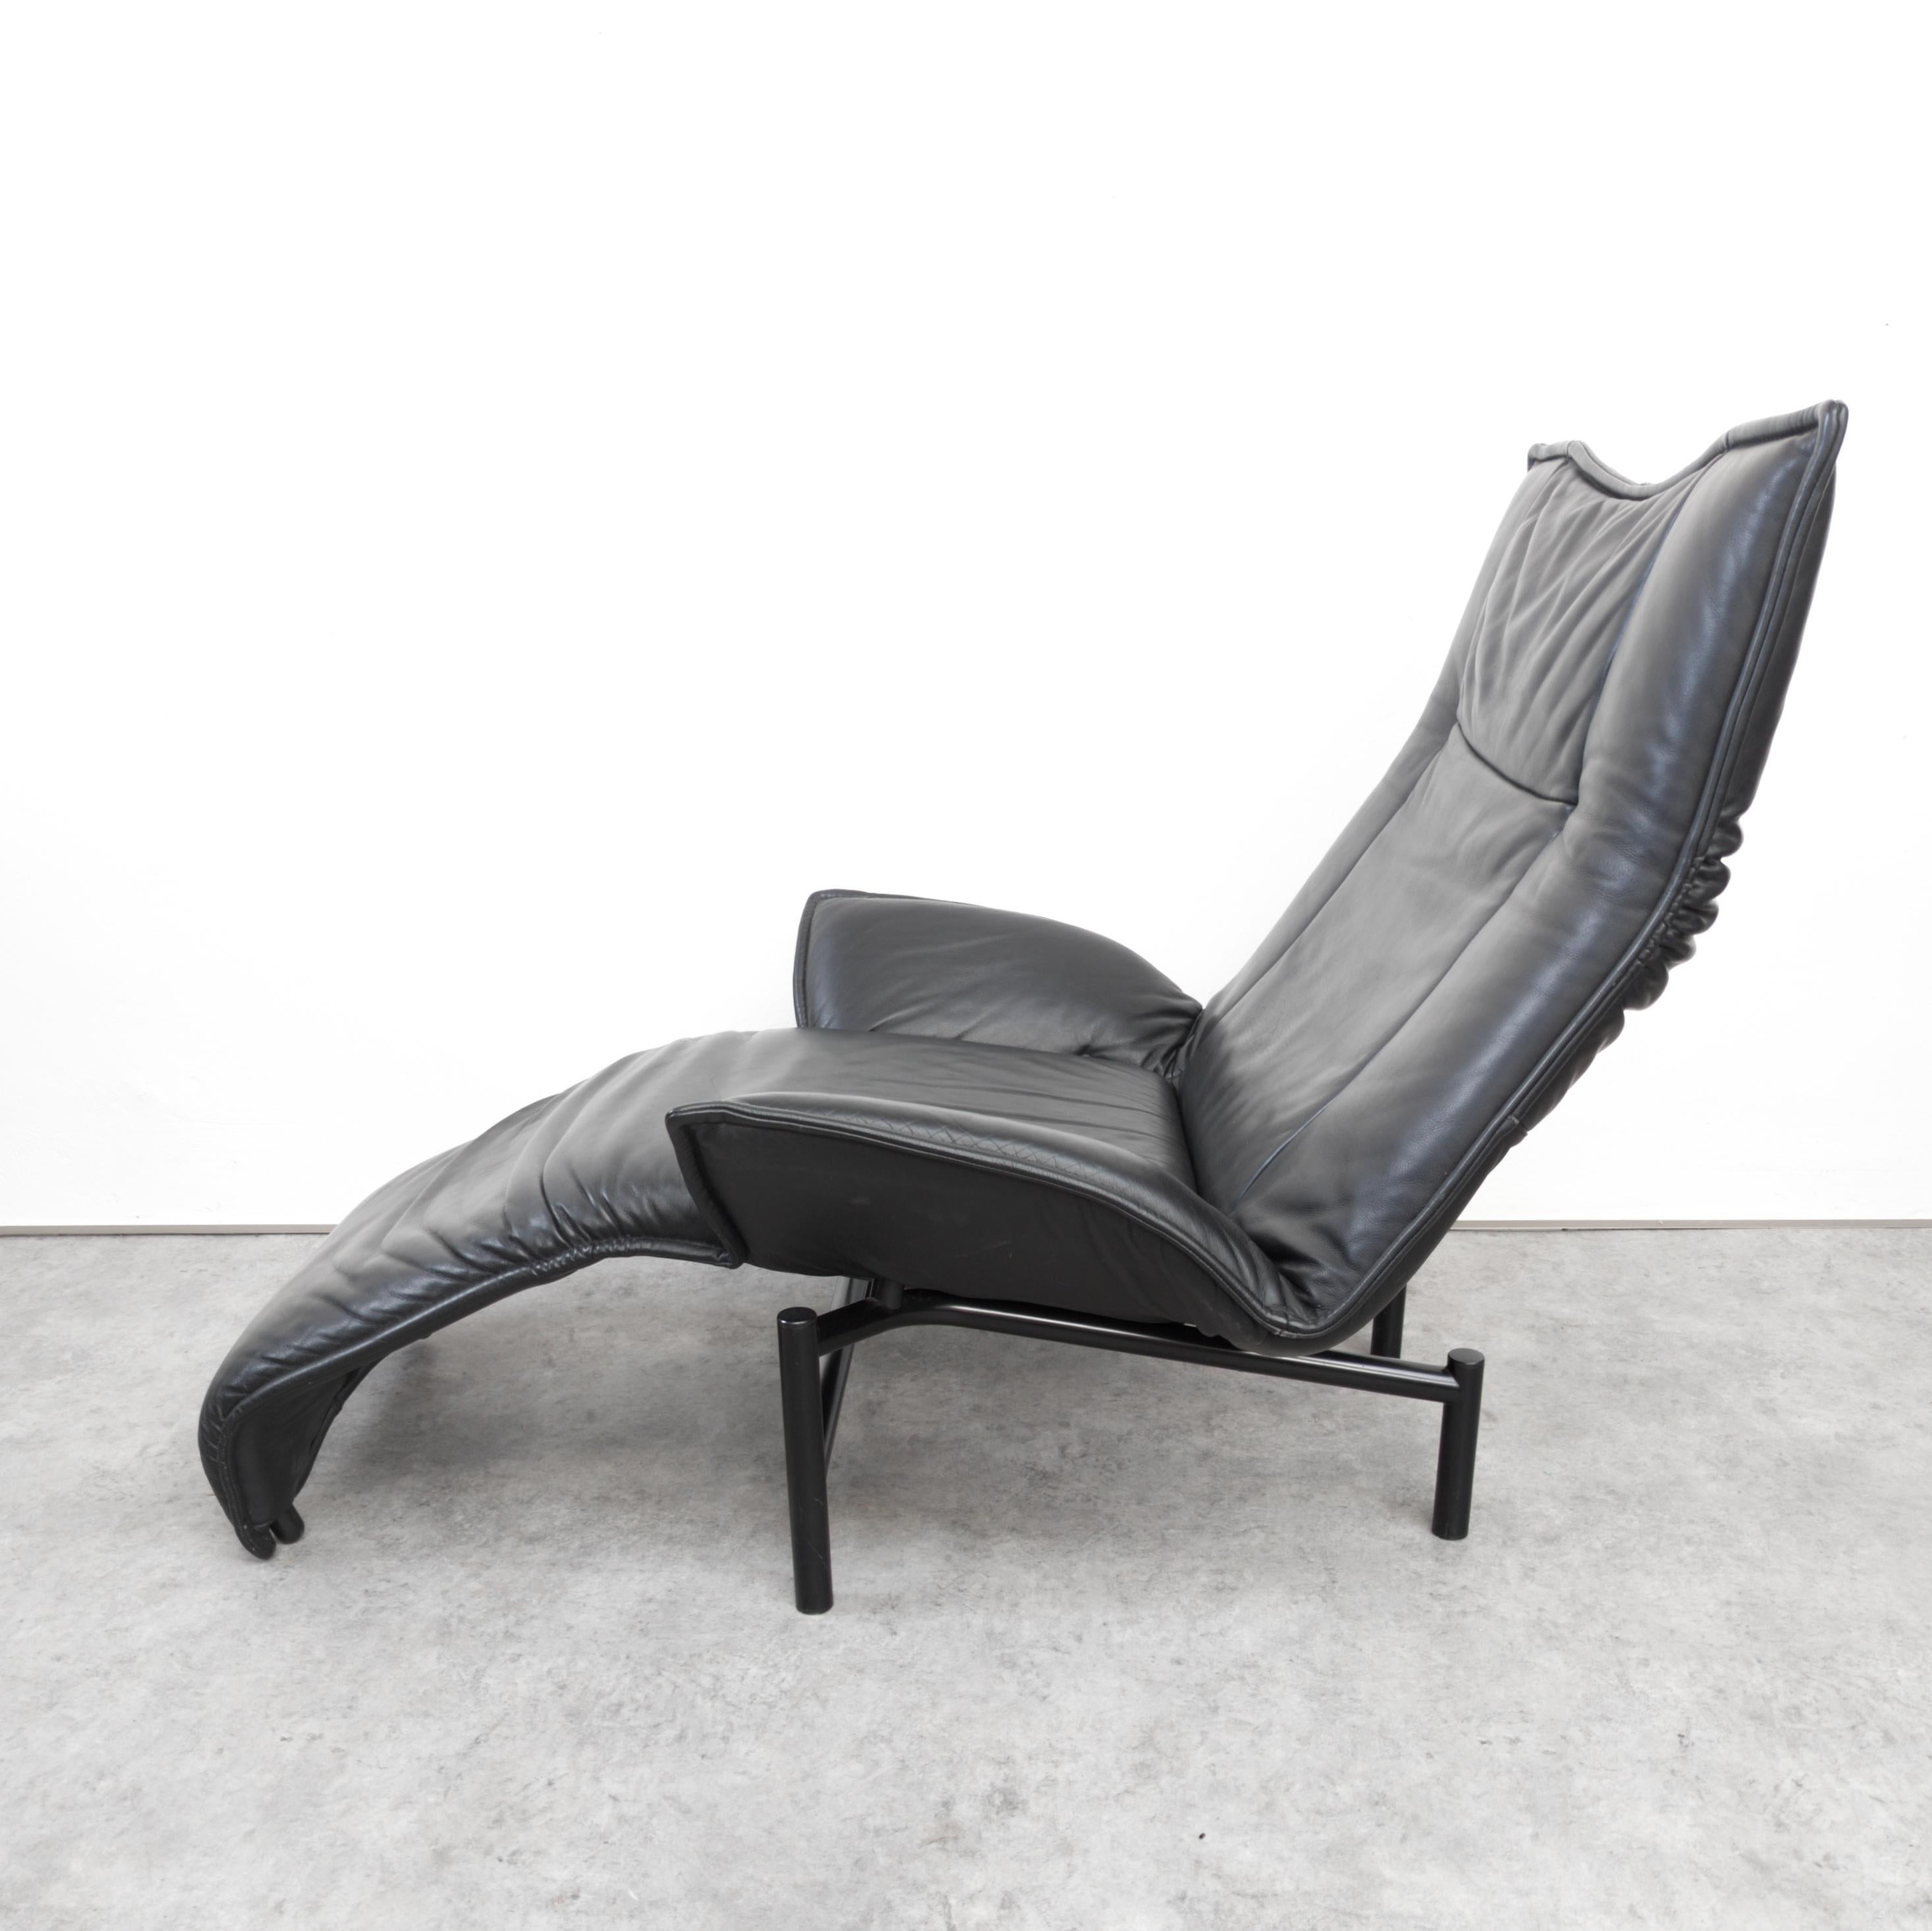 Italian Veranda Adjustable Lounge Chair by Vico Magistretti for Cassina